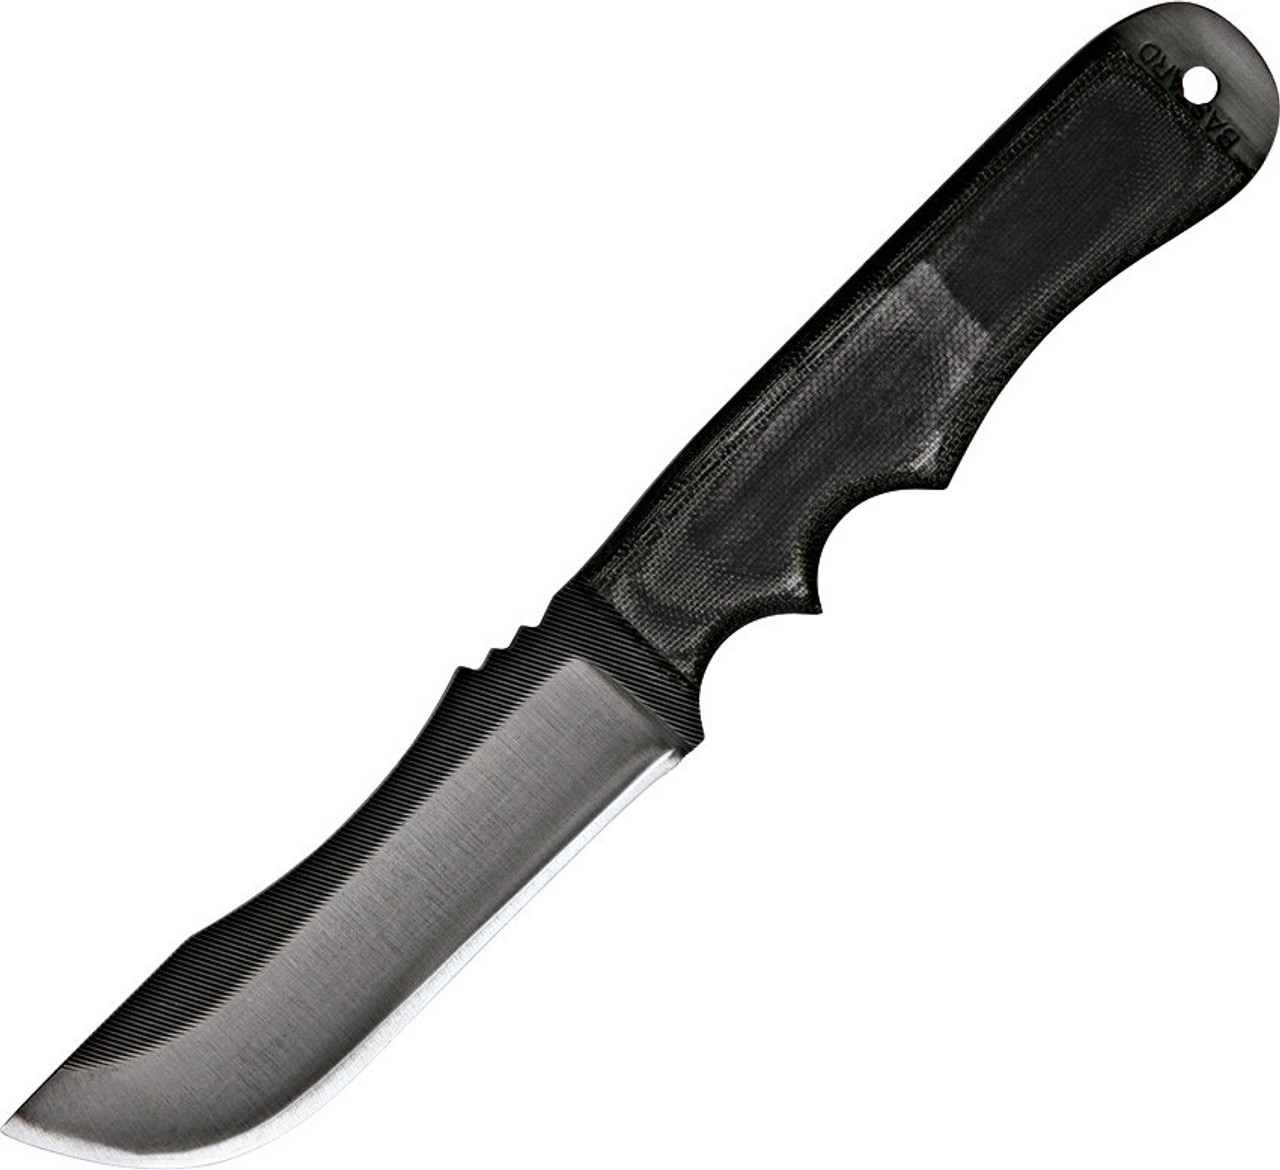 Anza Tracker Fixed Knife $109.95